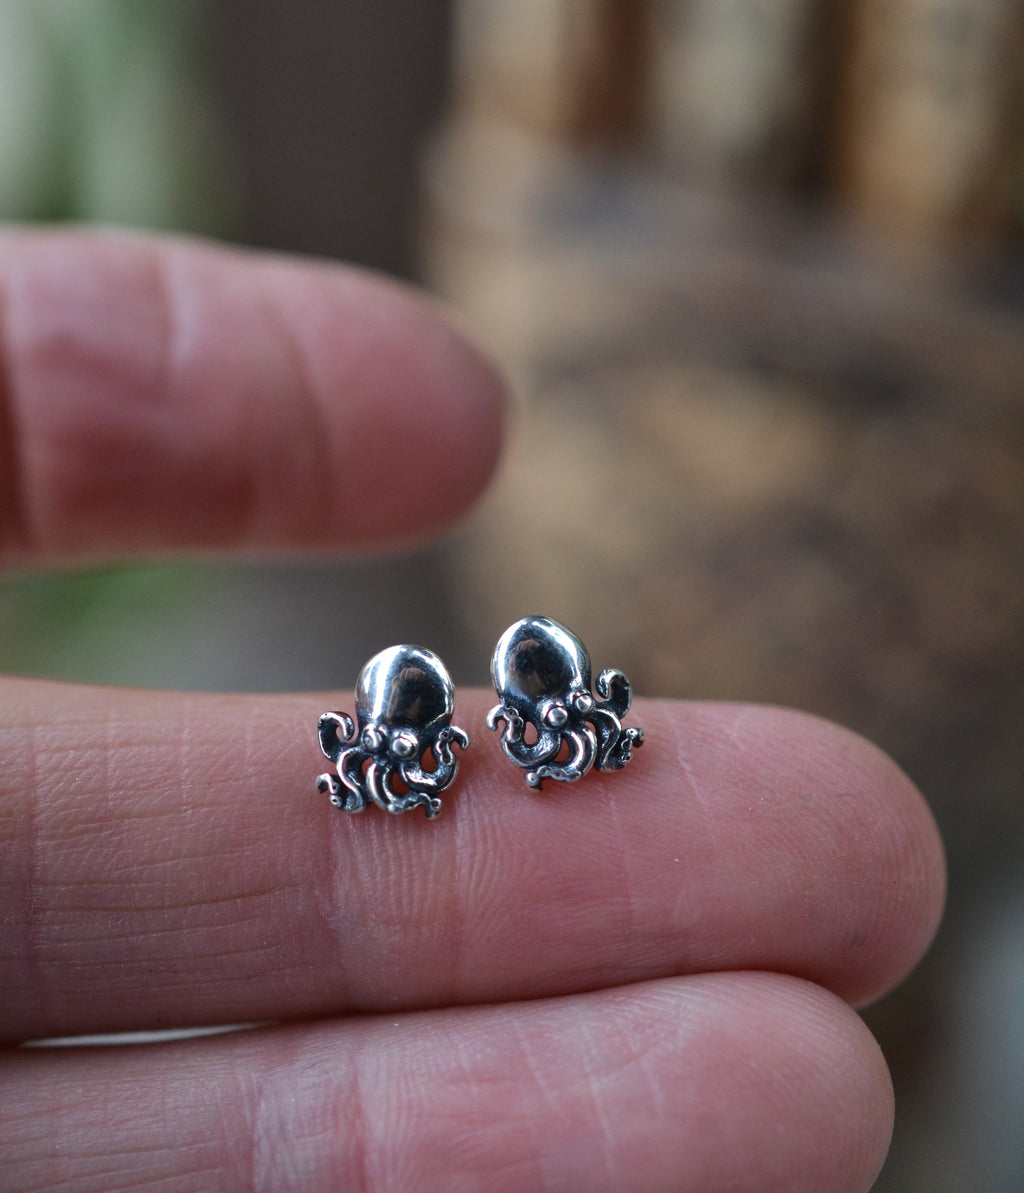 Low Stock! Octopus Stud Earrings - Sterling Silver